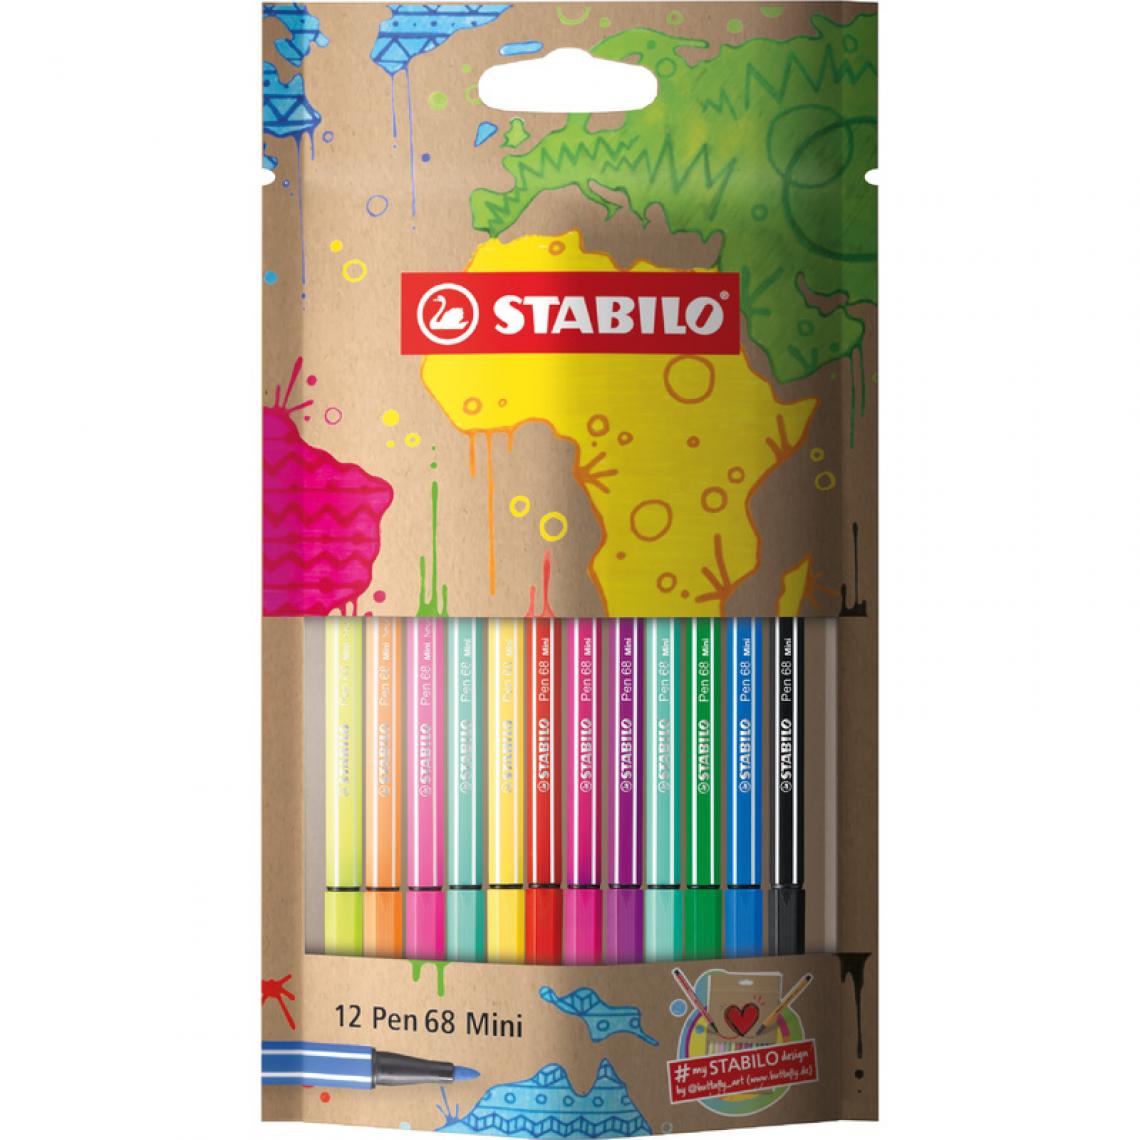 Stabilo - STABILO Feutre Pen 68 Mini, #mySTABILOdesign, étui de 12 () - Outils et accessoires du peintre